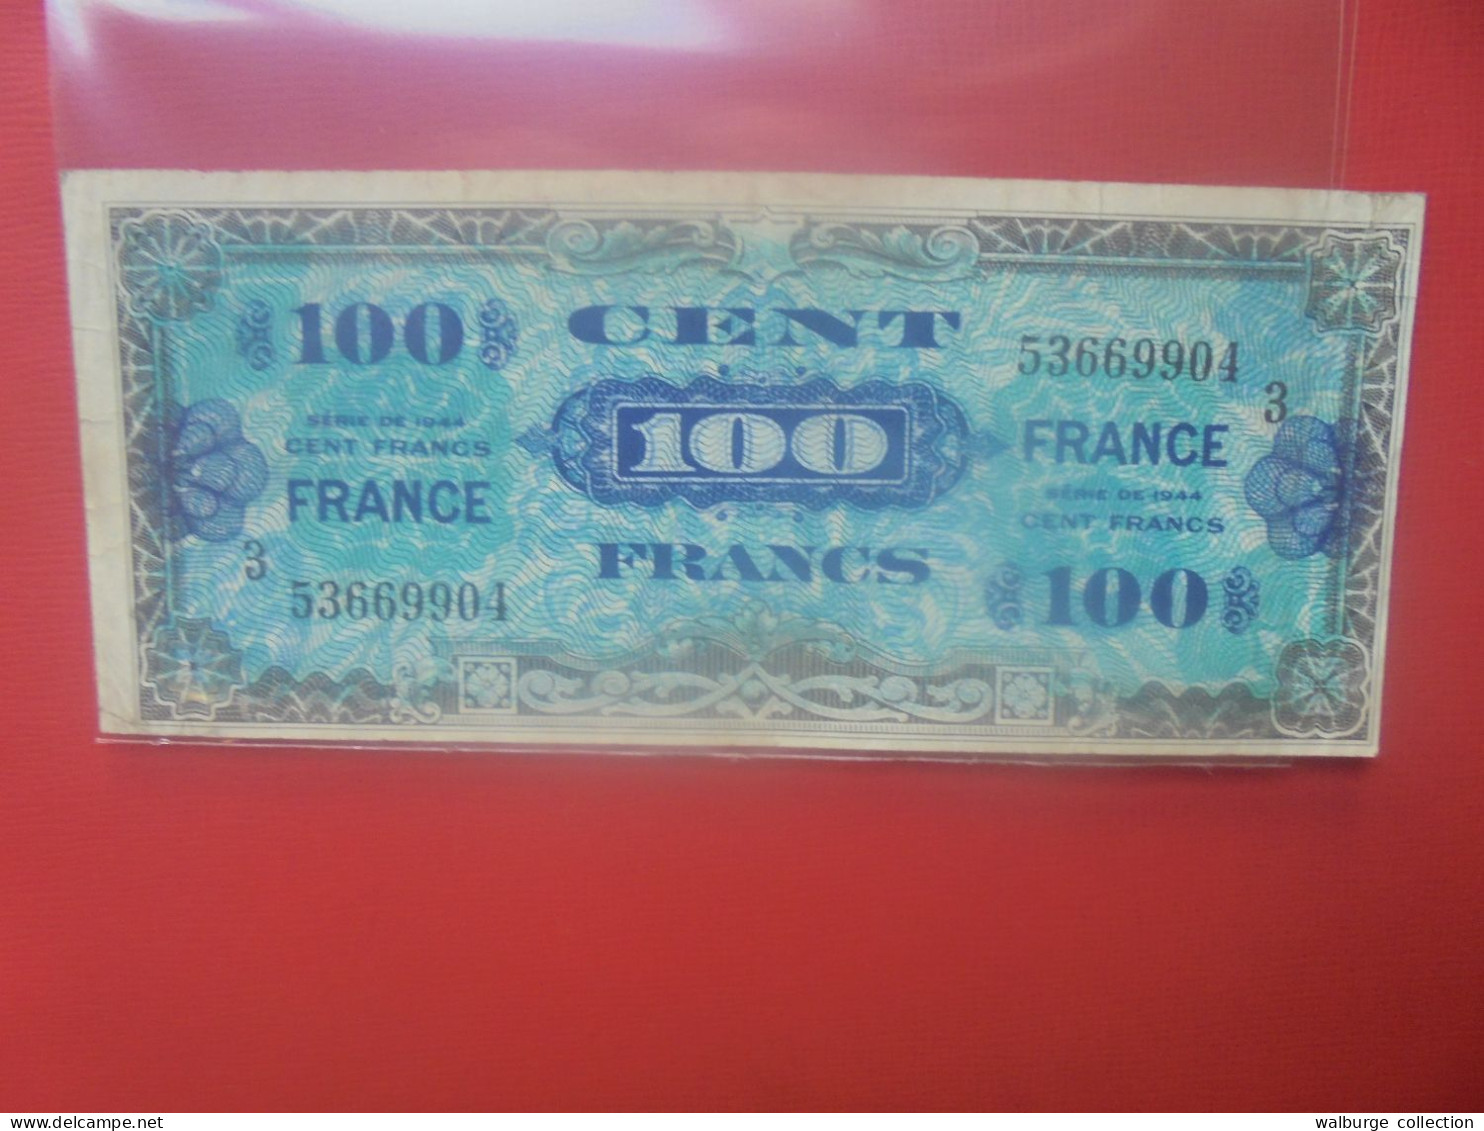 FRANCE 100 FRANCS 1945 Circuler - 1945 Verso Francés